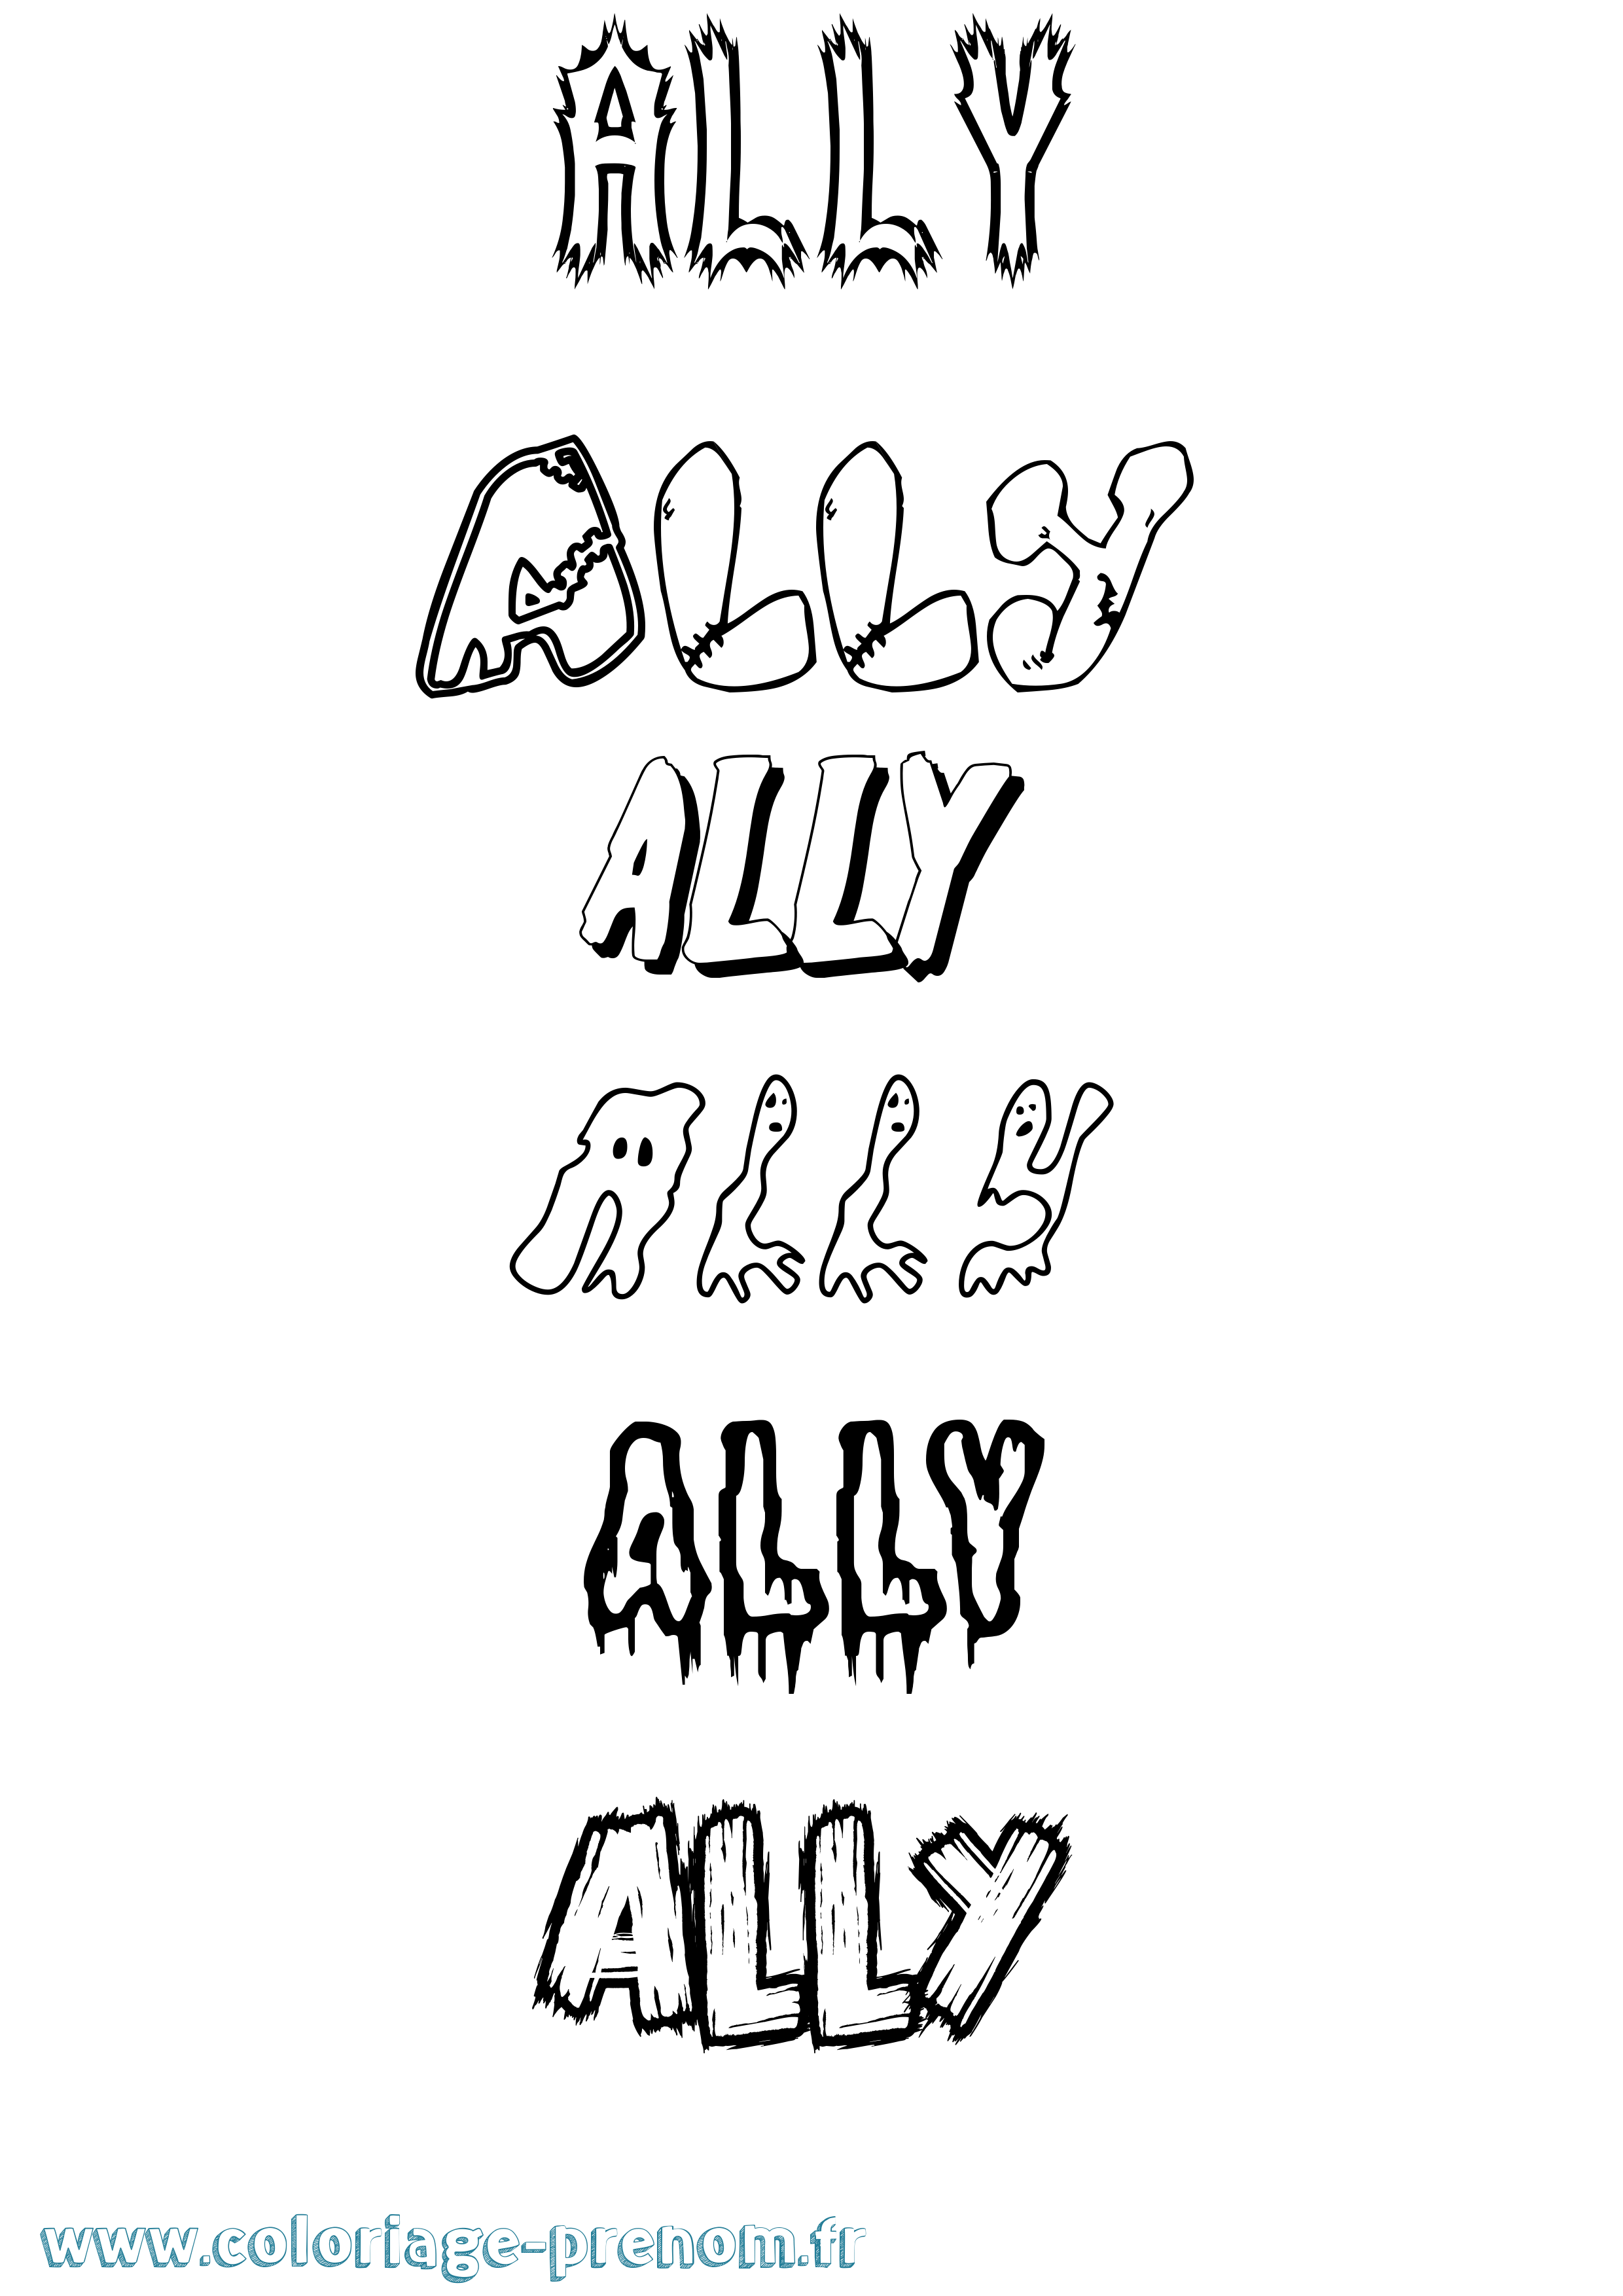 Coloriage prénom Ally Frisson